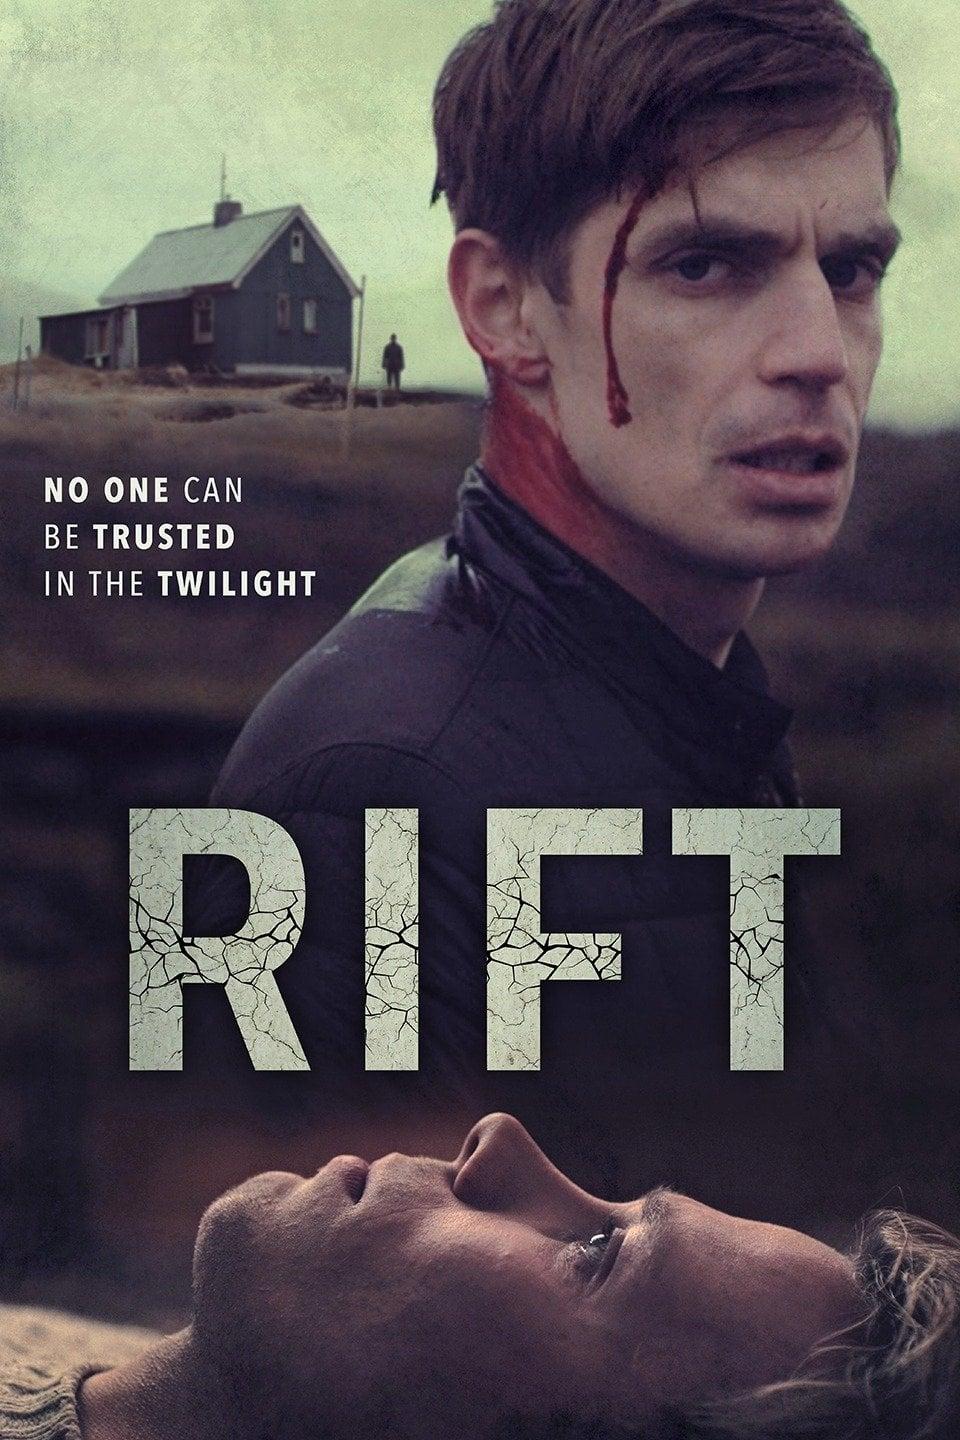 Rift poster